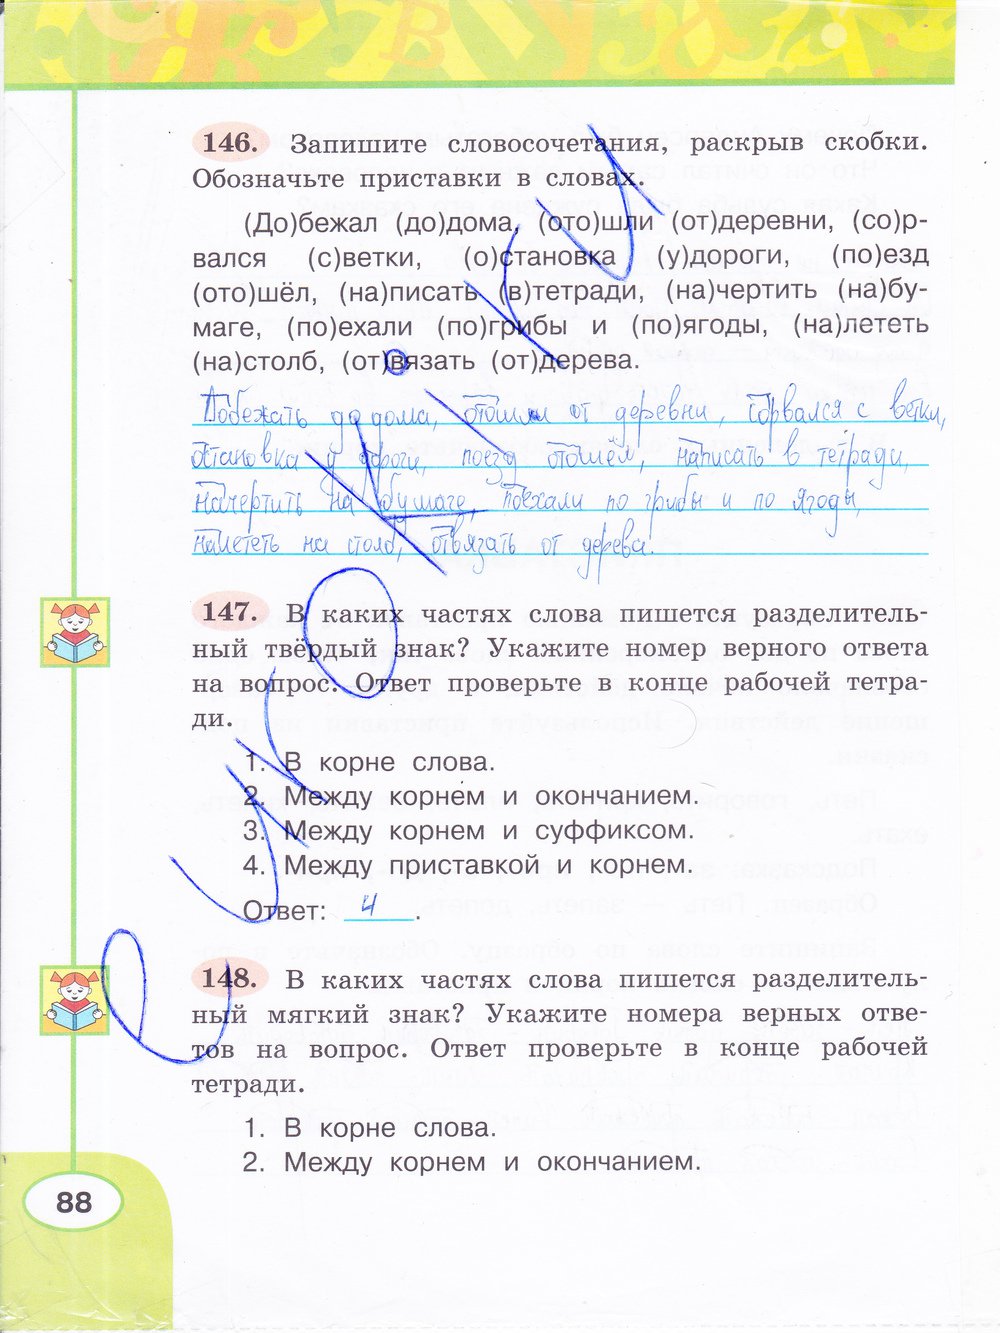 гдз 3 класс рабочая тетрадь часть 1 страница 88 русский язык Климанова, Бабушкина